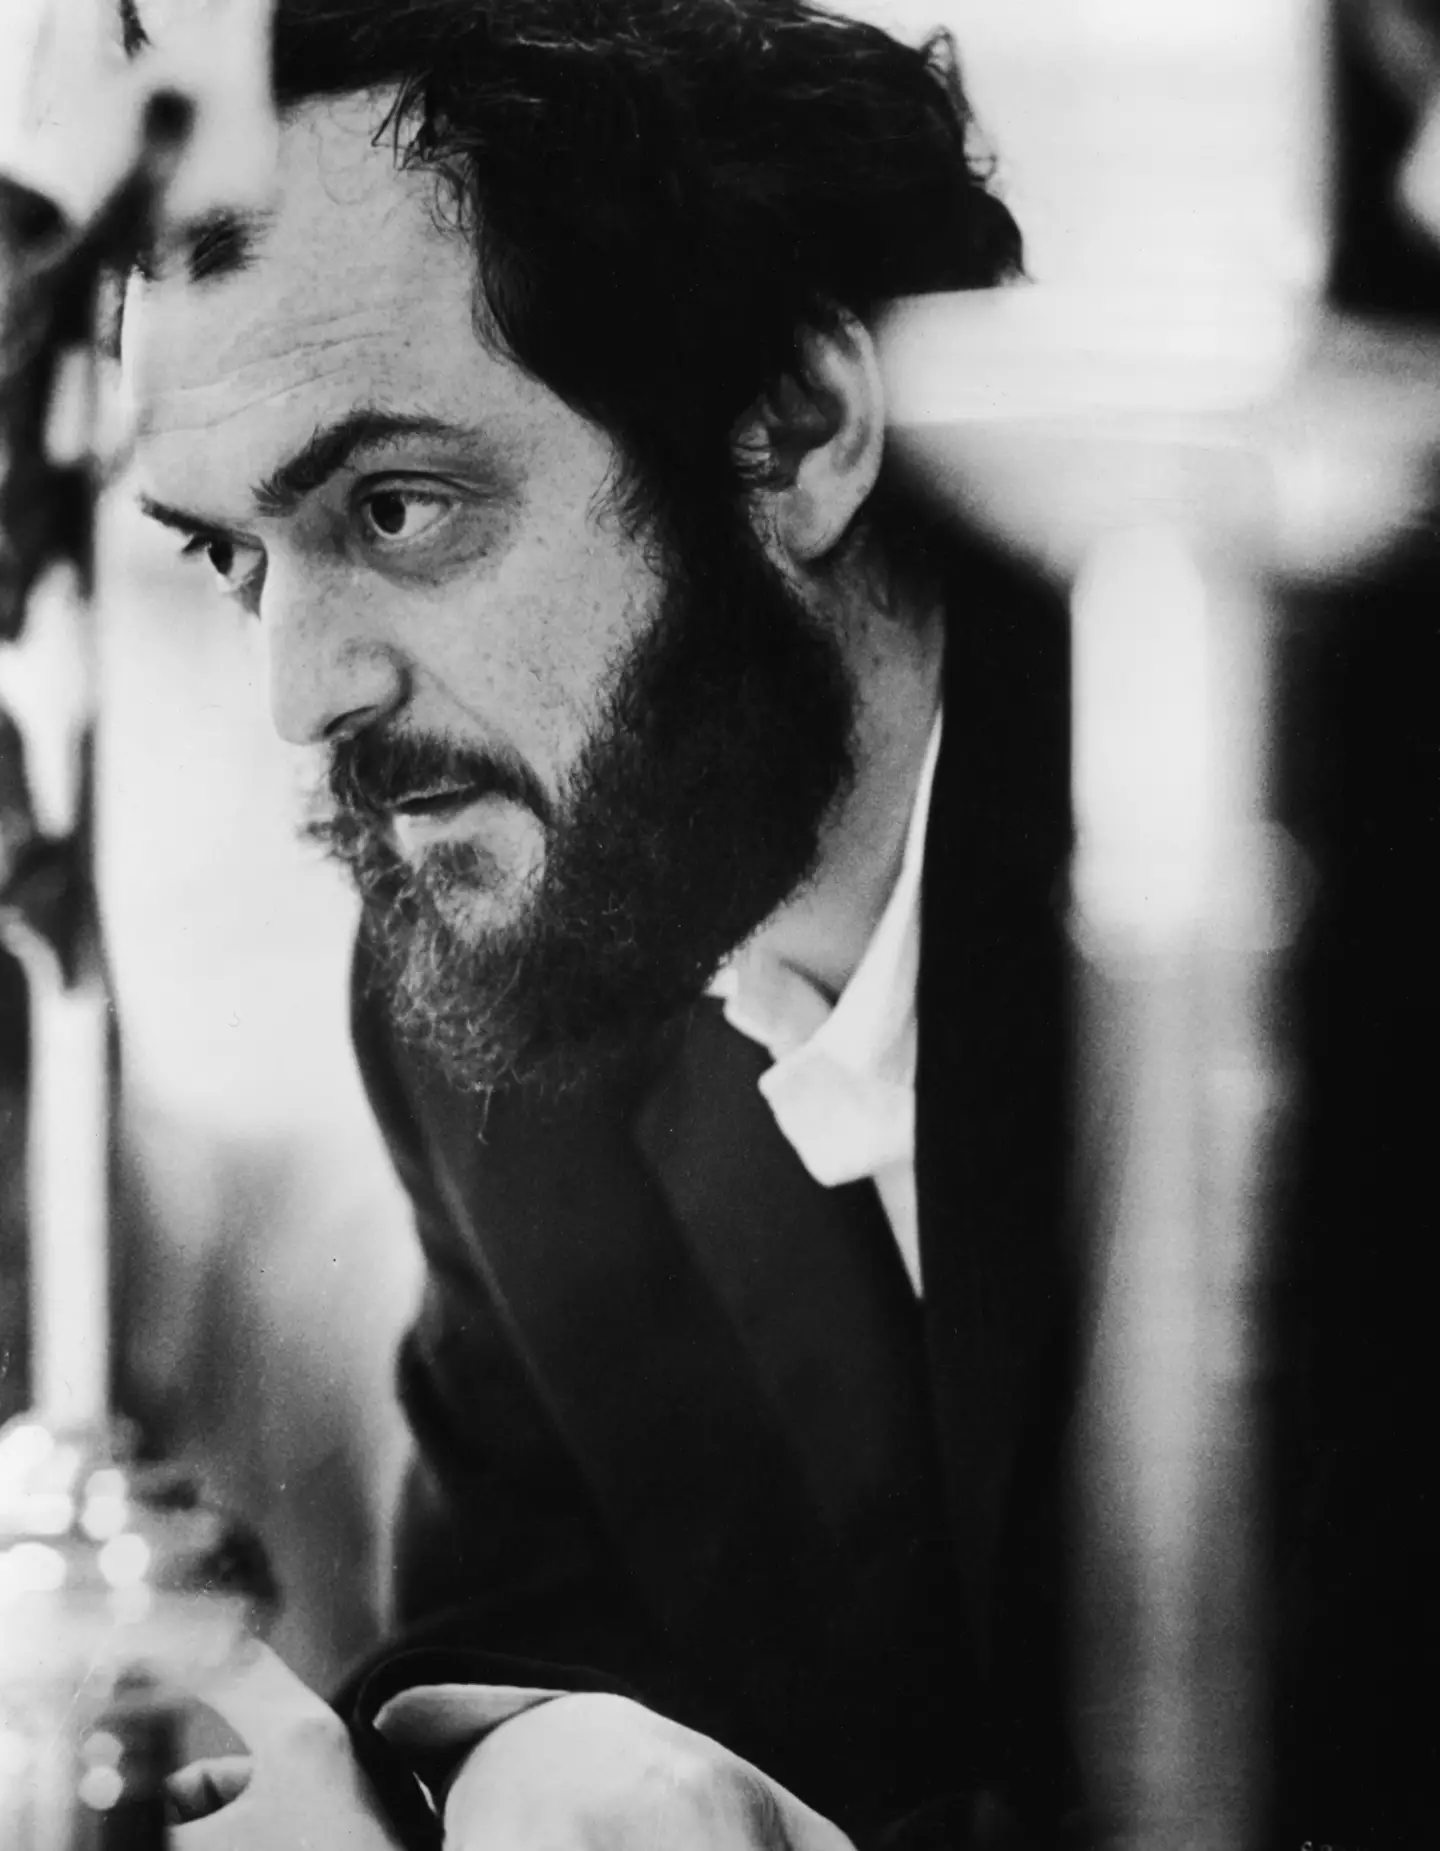 Stanley Kubrick on the set of A Clockwork Orange (1971).